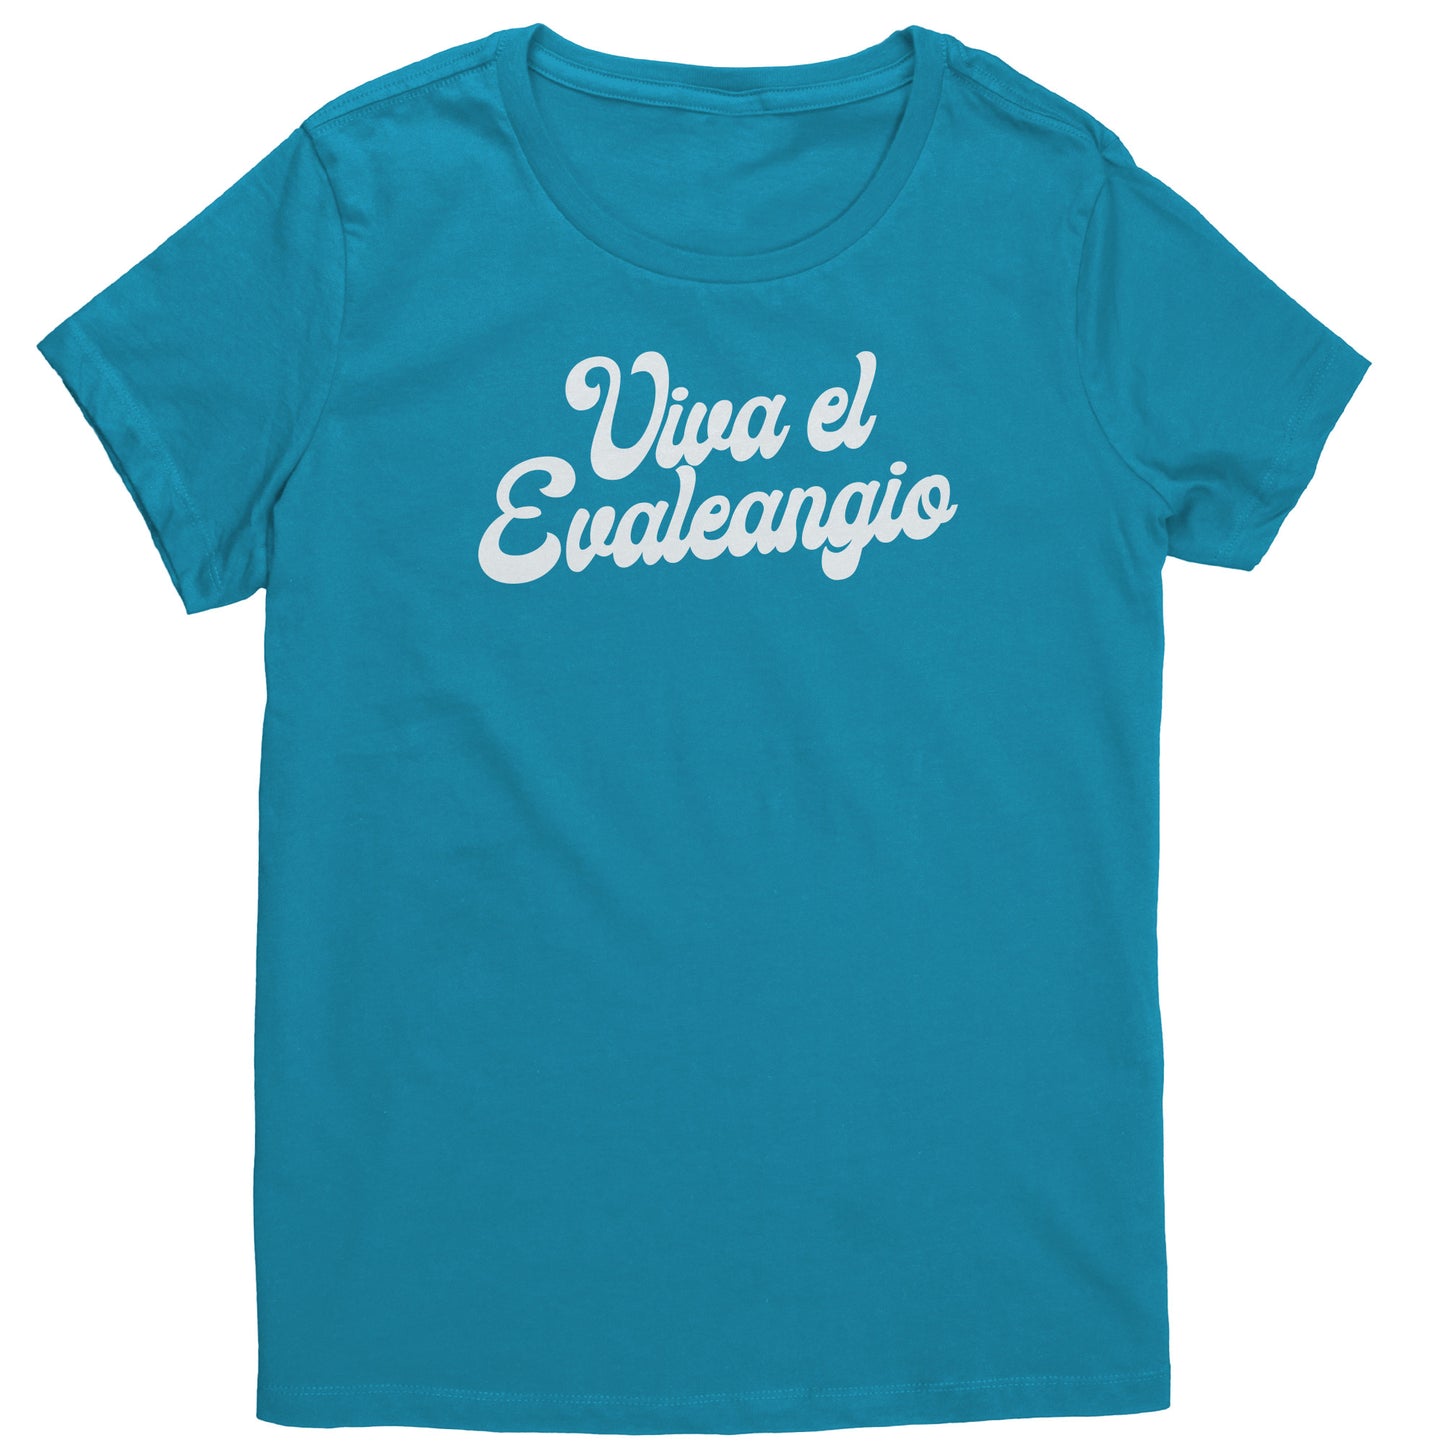 Viva el Evaleangio Women's T-Shirt Part 2